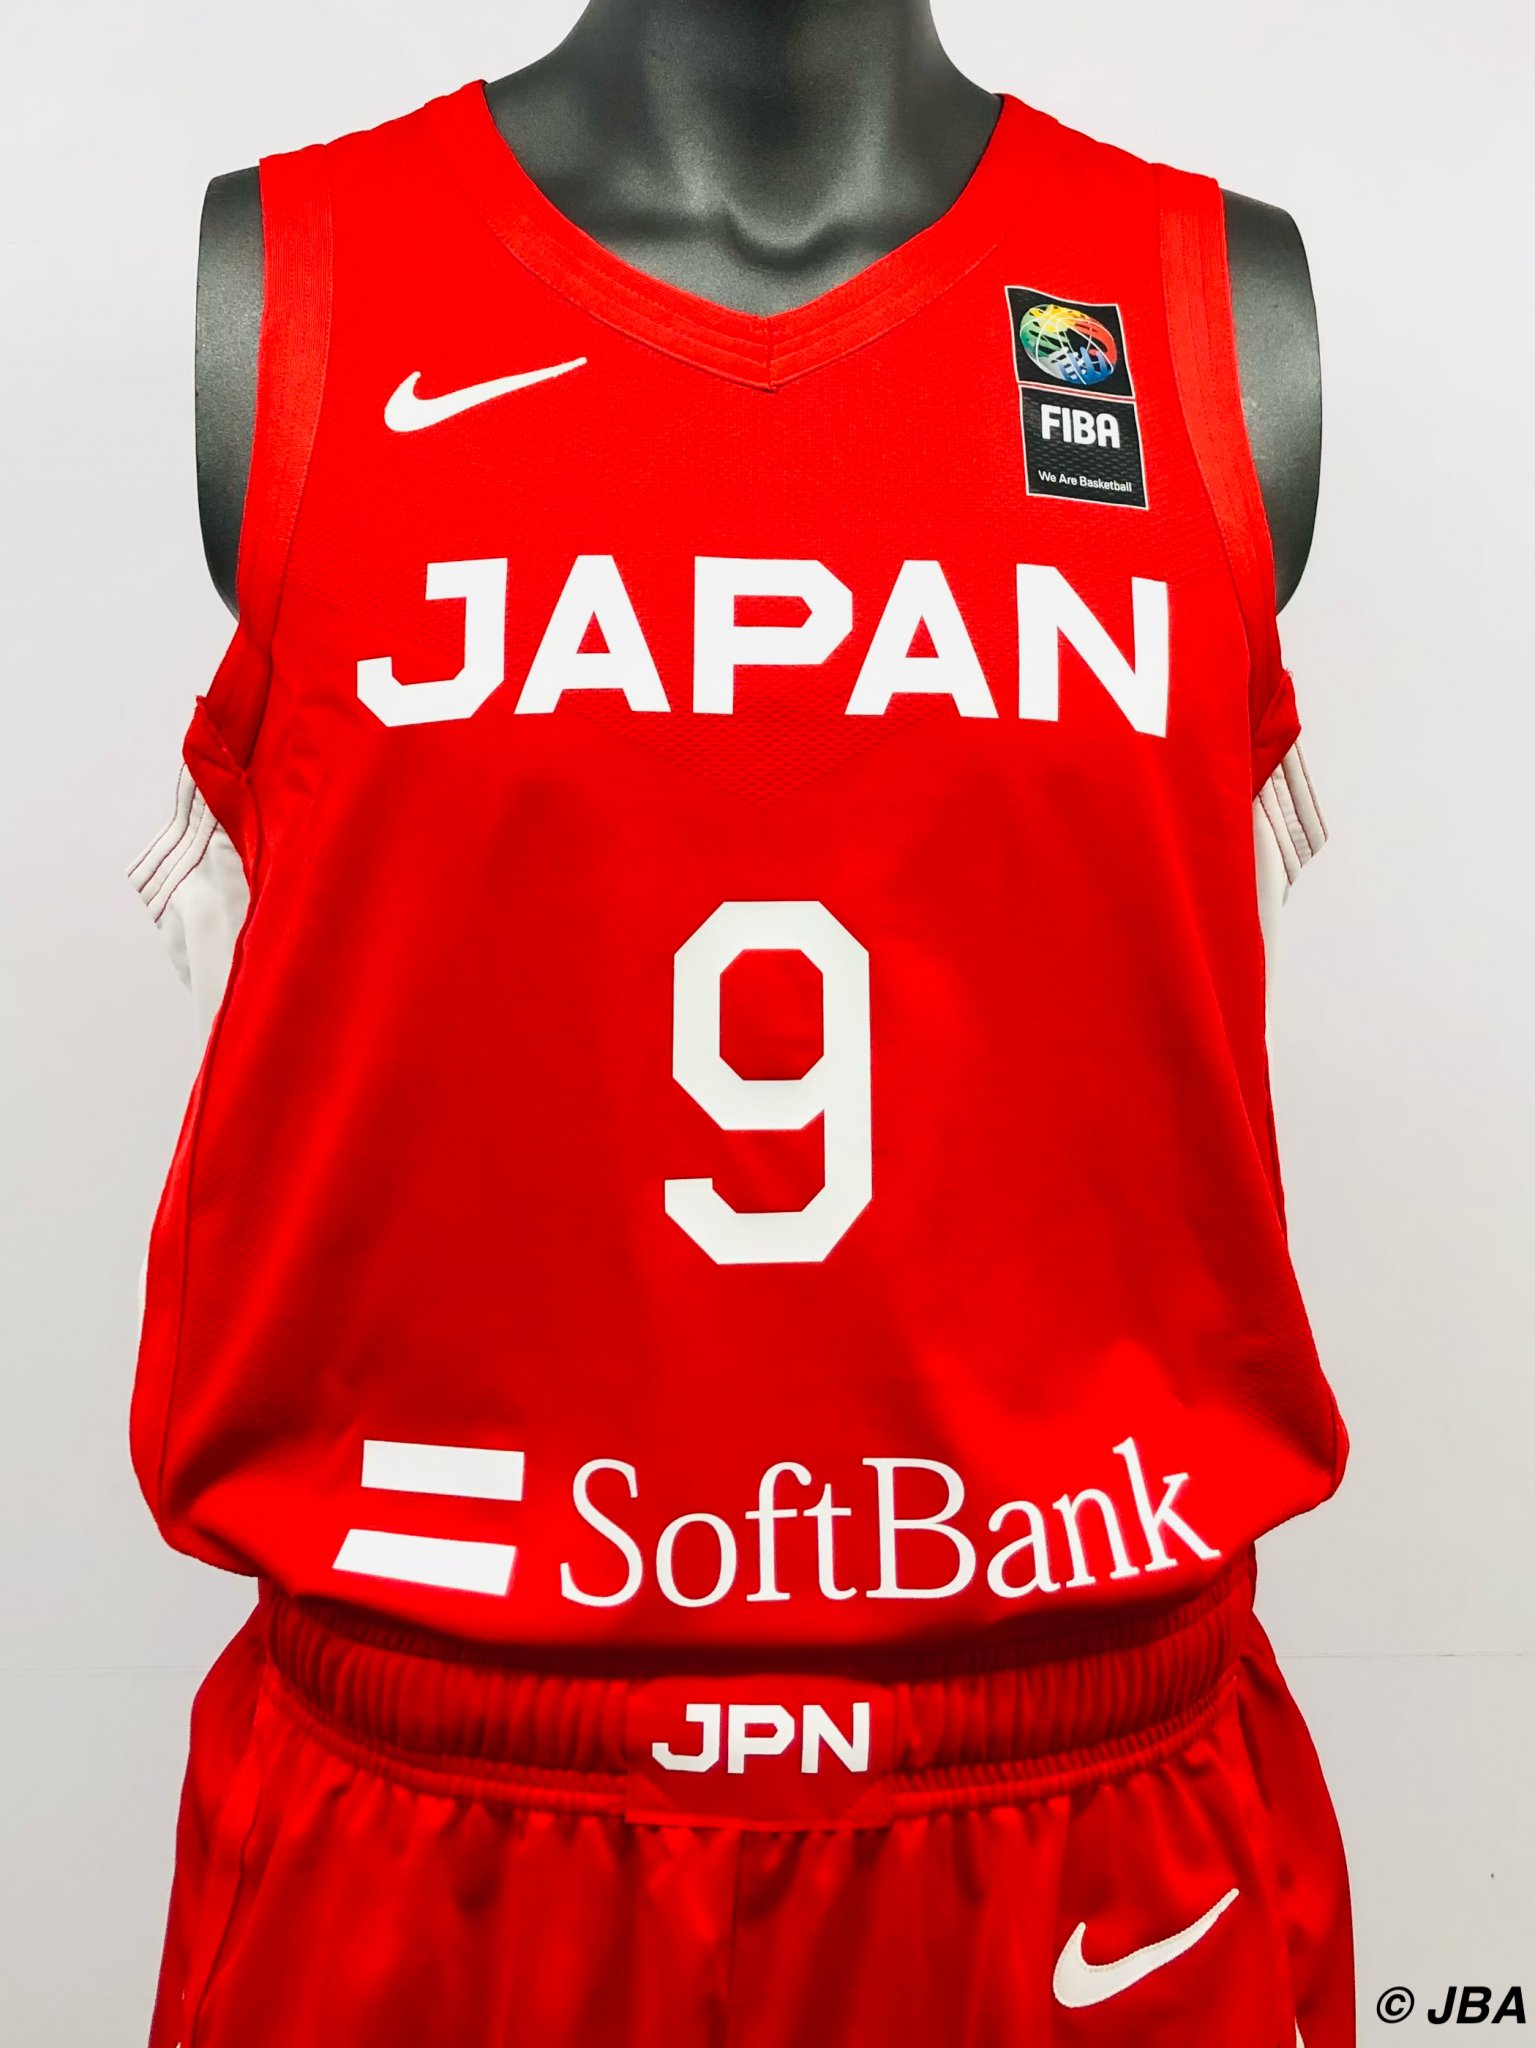 【日本代表】日本代表バスケットボール新ユニフォーム、ナイキとの新たなパートナーシップ締結 - J basket ジェイバスケット